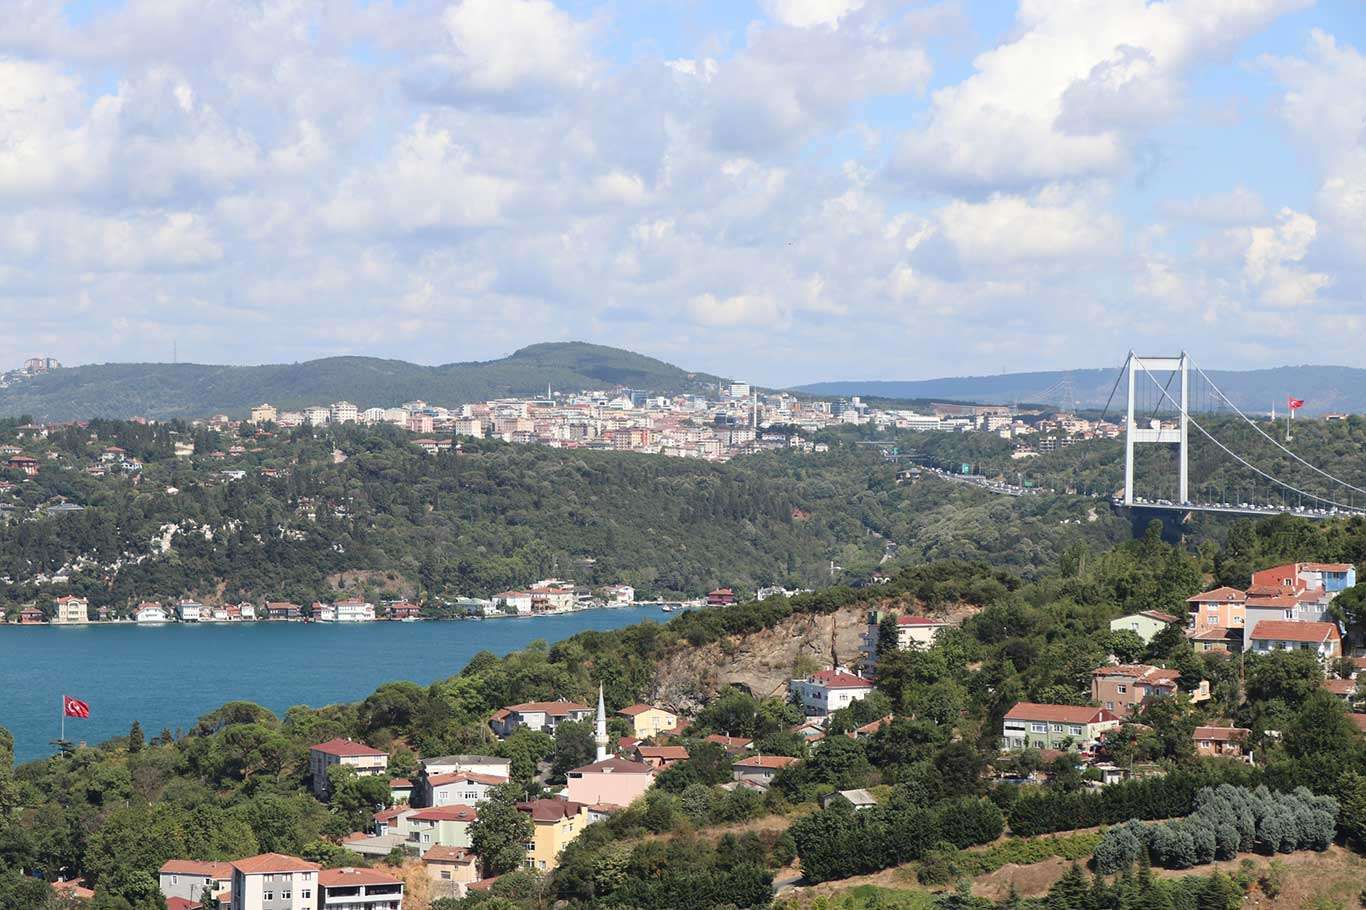 Deprem Uzmanı Sütçü: Marmara bölgesinde 7,5 şiddetinde bir deprem ve Tsunami olabilir